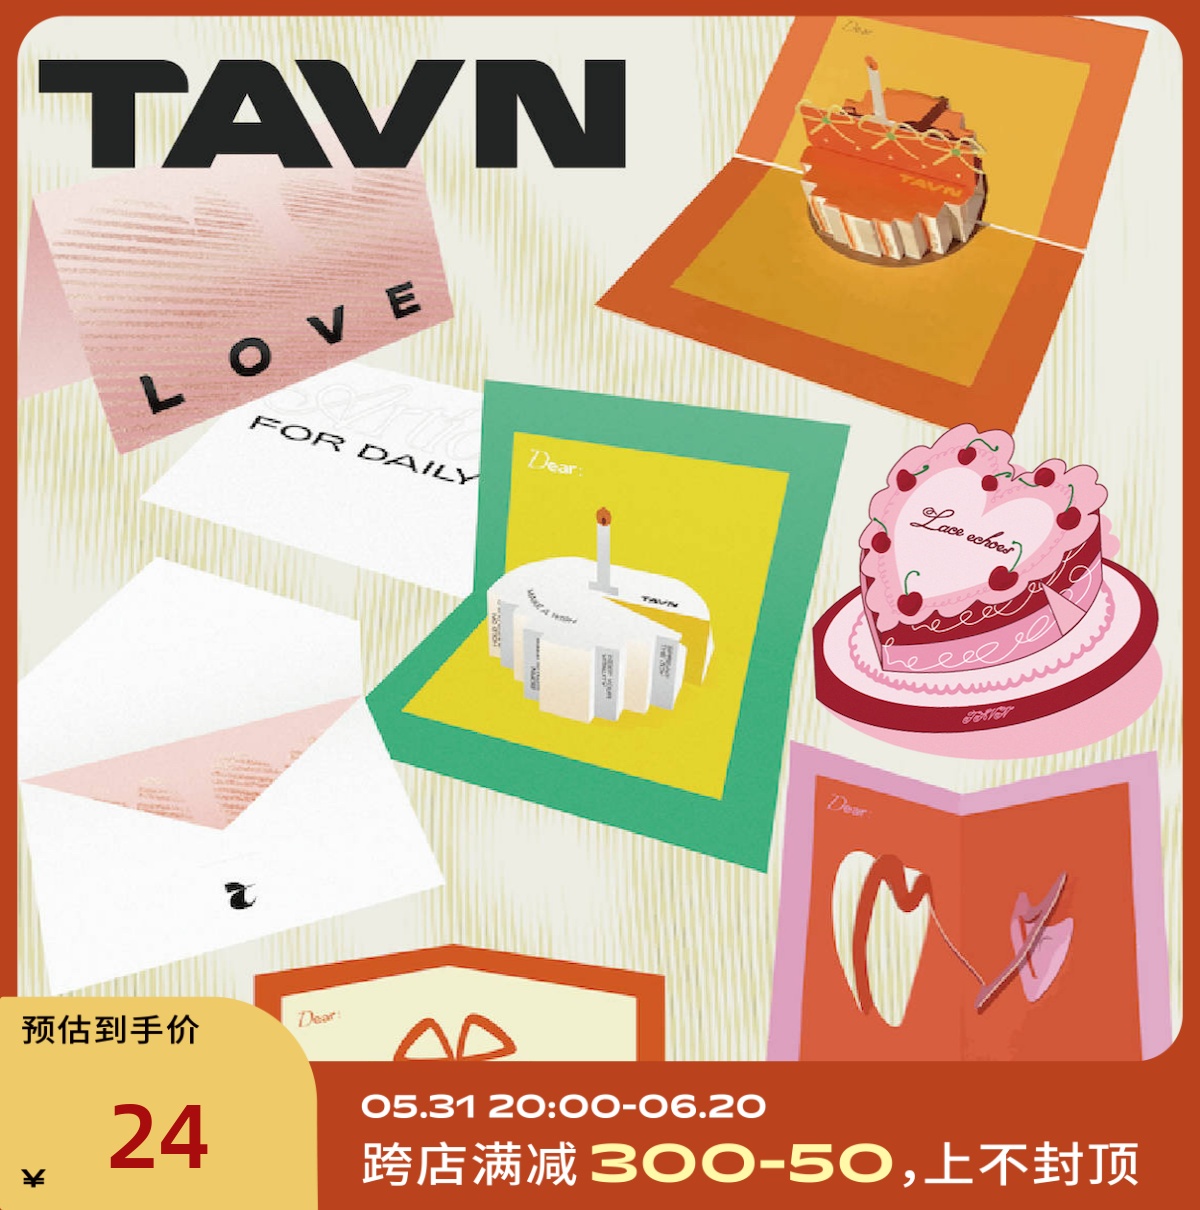 TAVN折叠创意纸雕3D立体爱心/蛋糕/礼盒贺卡节日祝福礼物卡片 5款